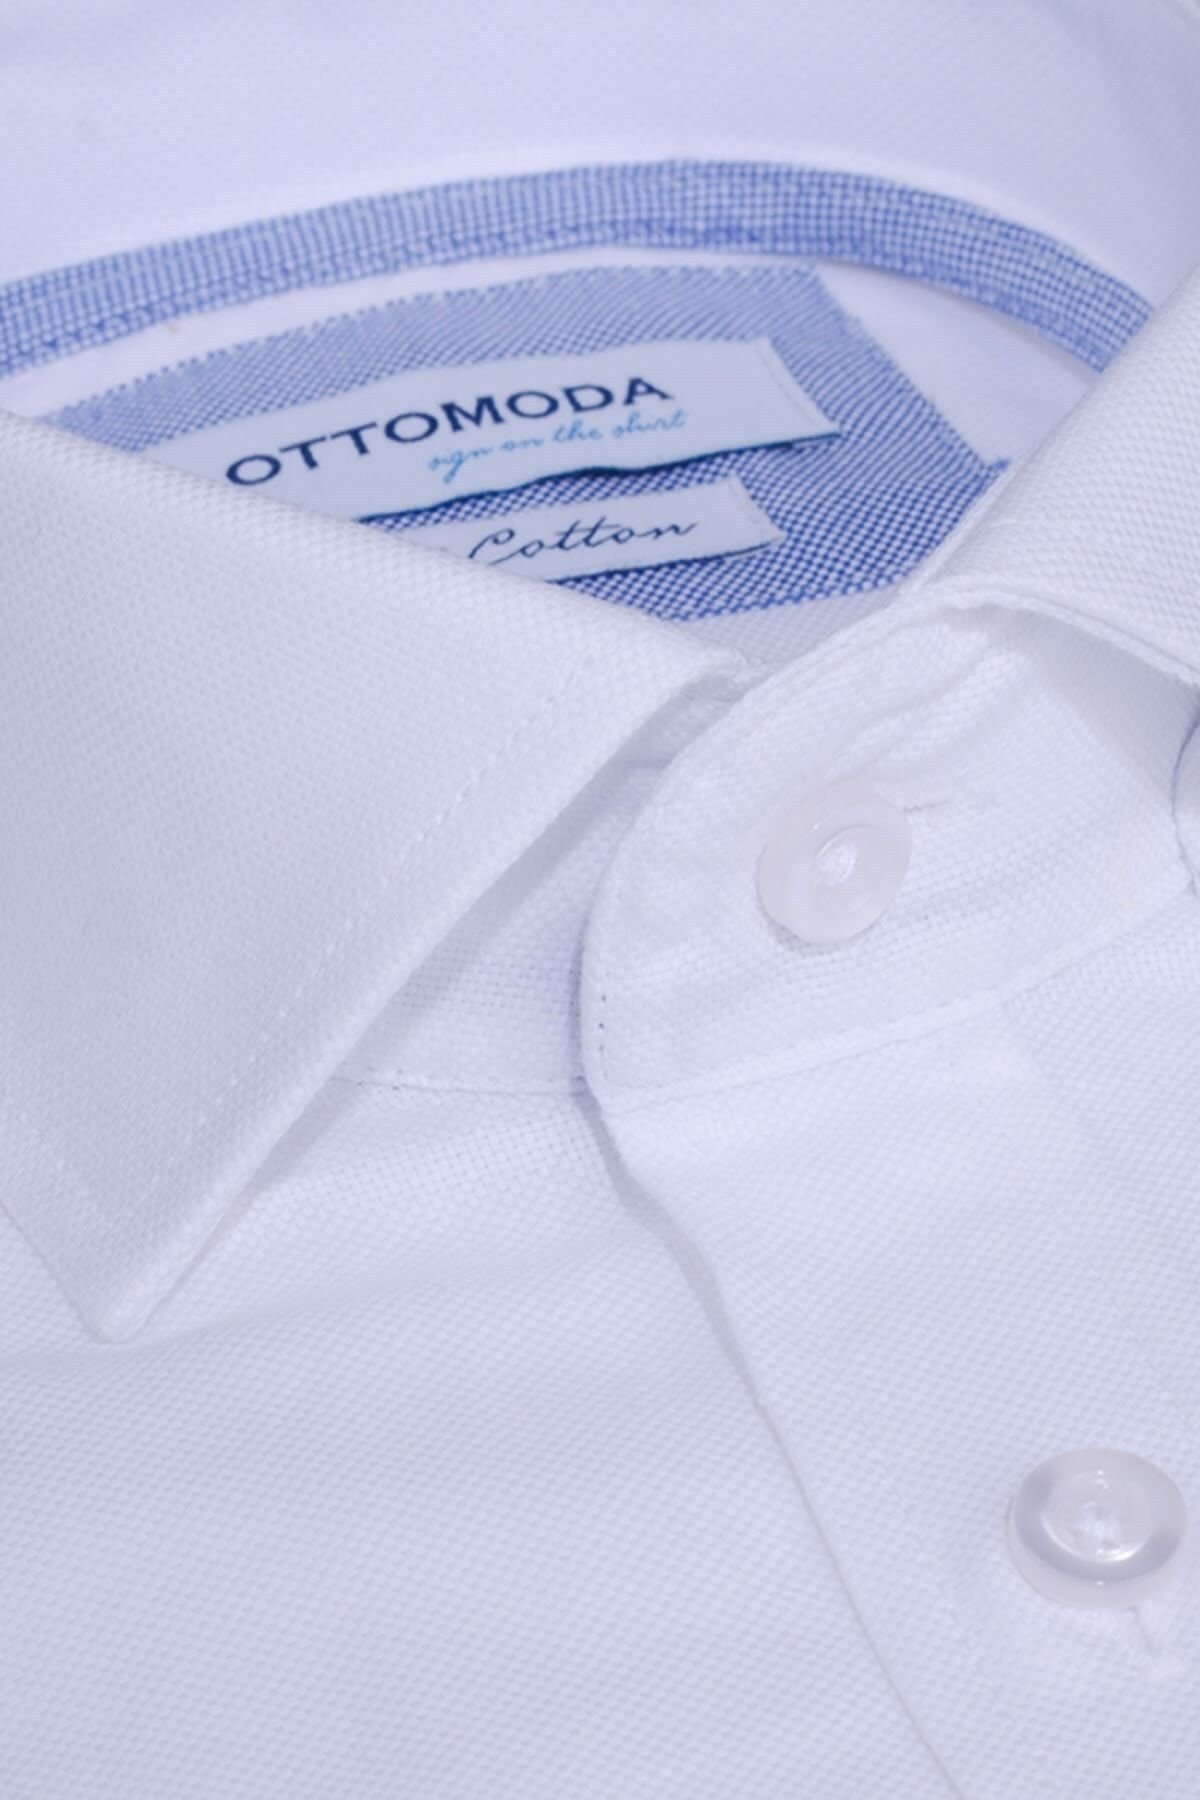 Ottomoda Oxford Pamuklu Beyaz Düz Regular Uzun Kollu Gömlek, Ot-c-20160